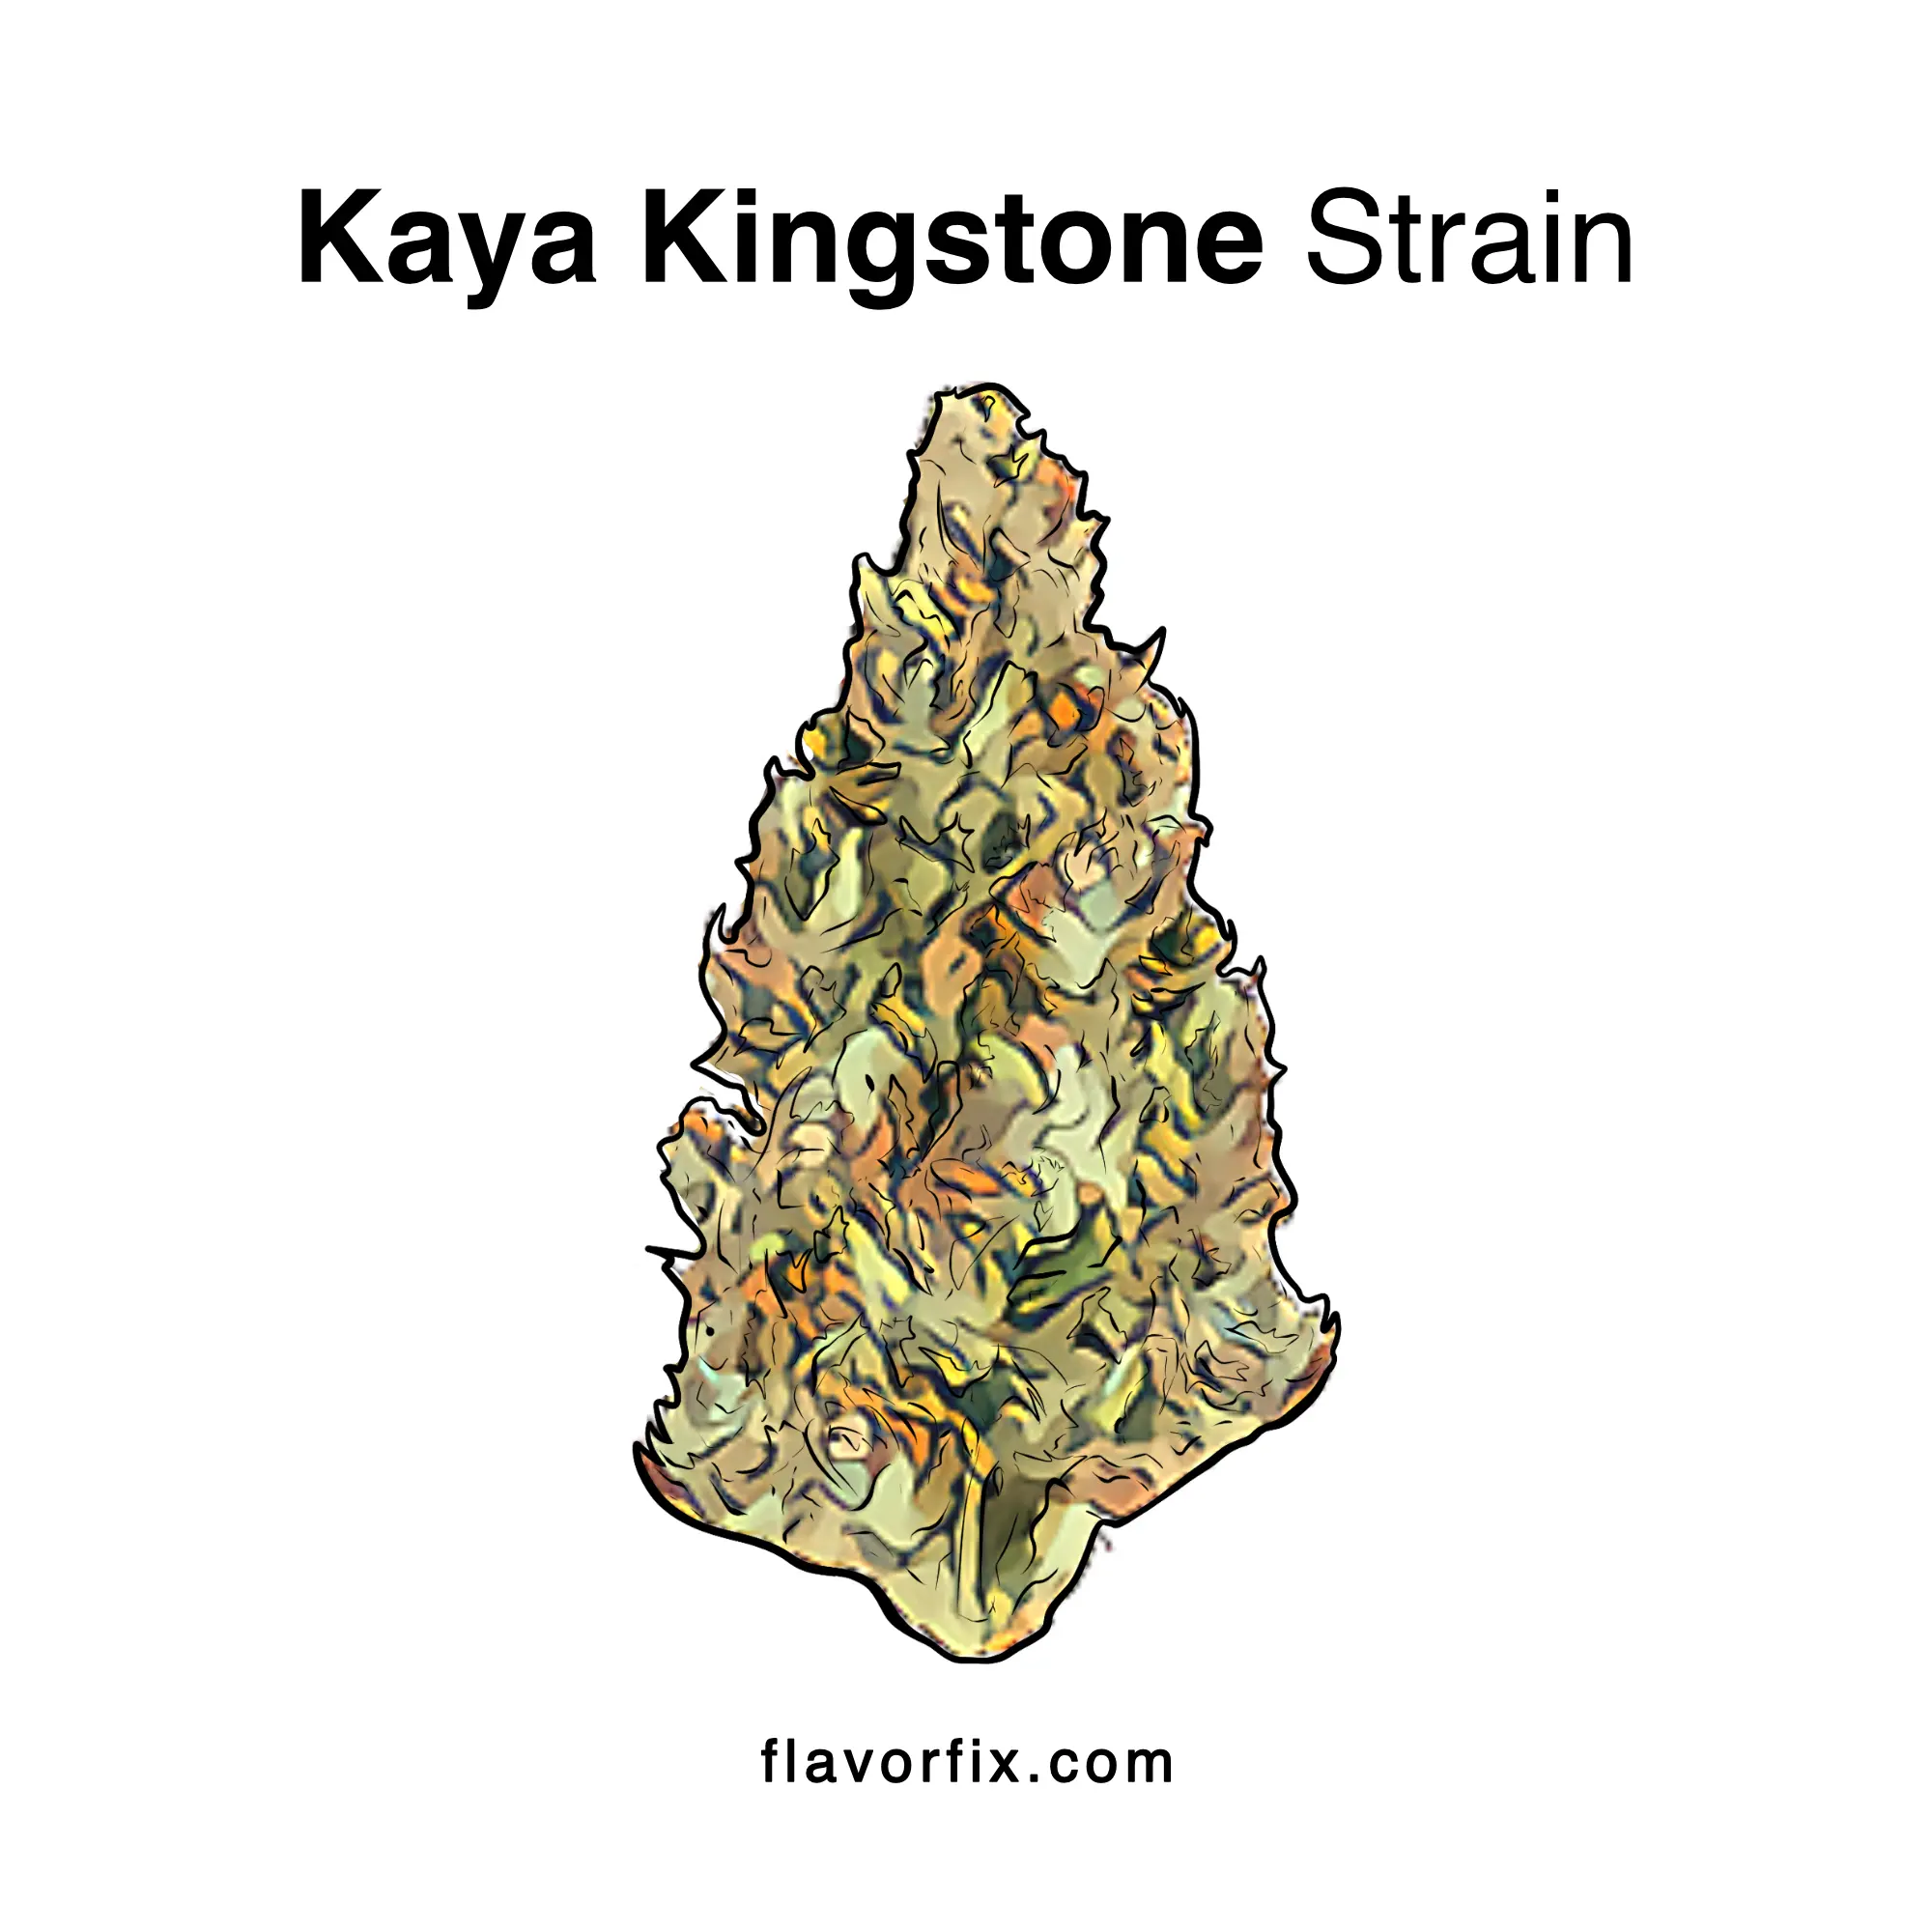 Kaya Kingstone Strain